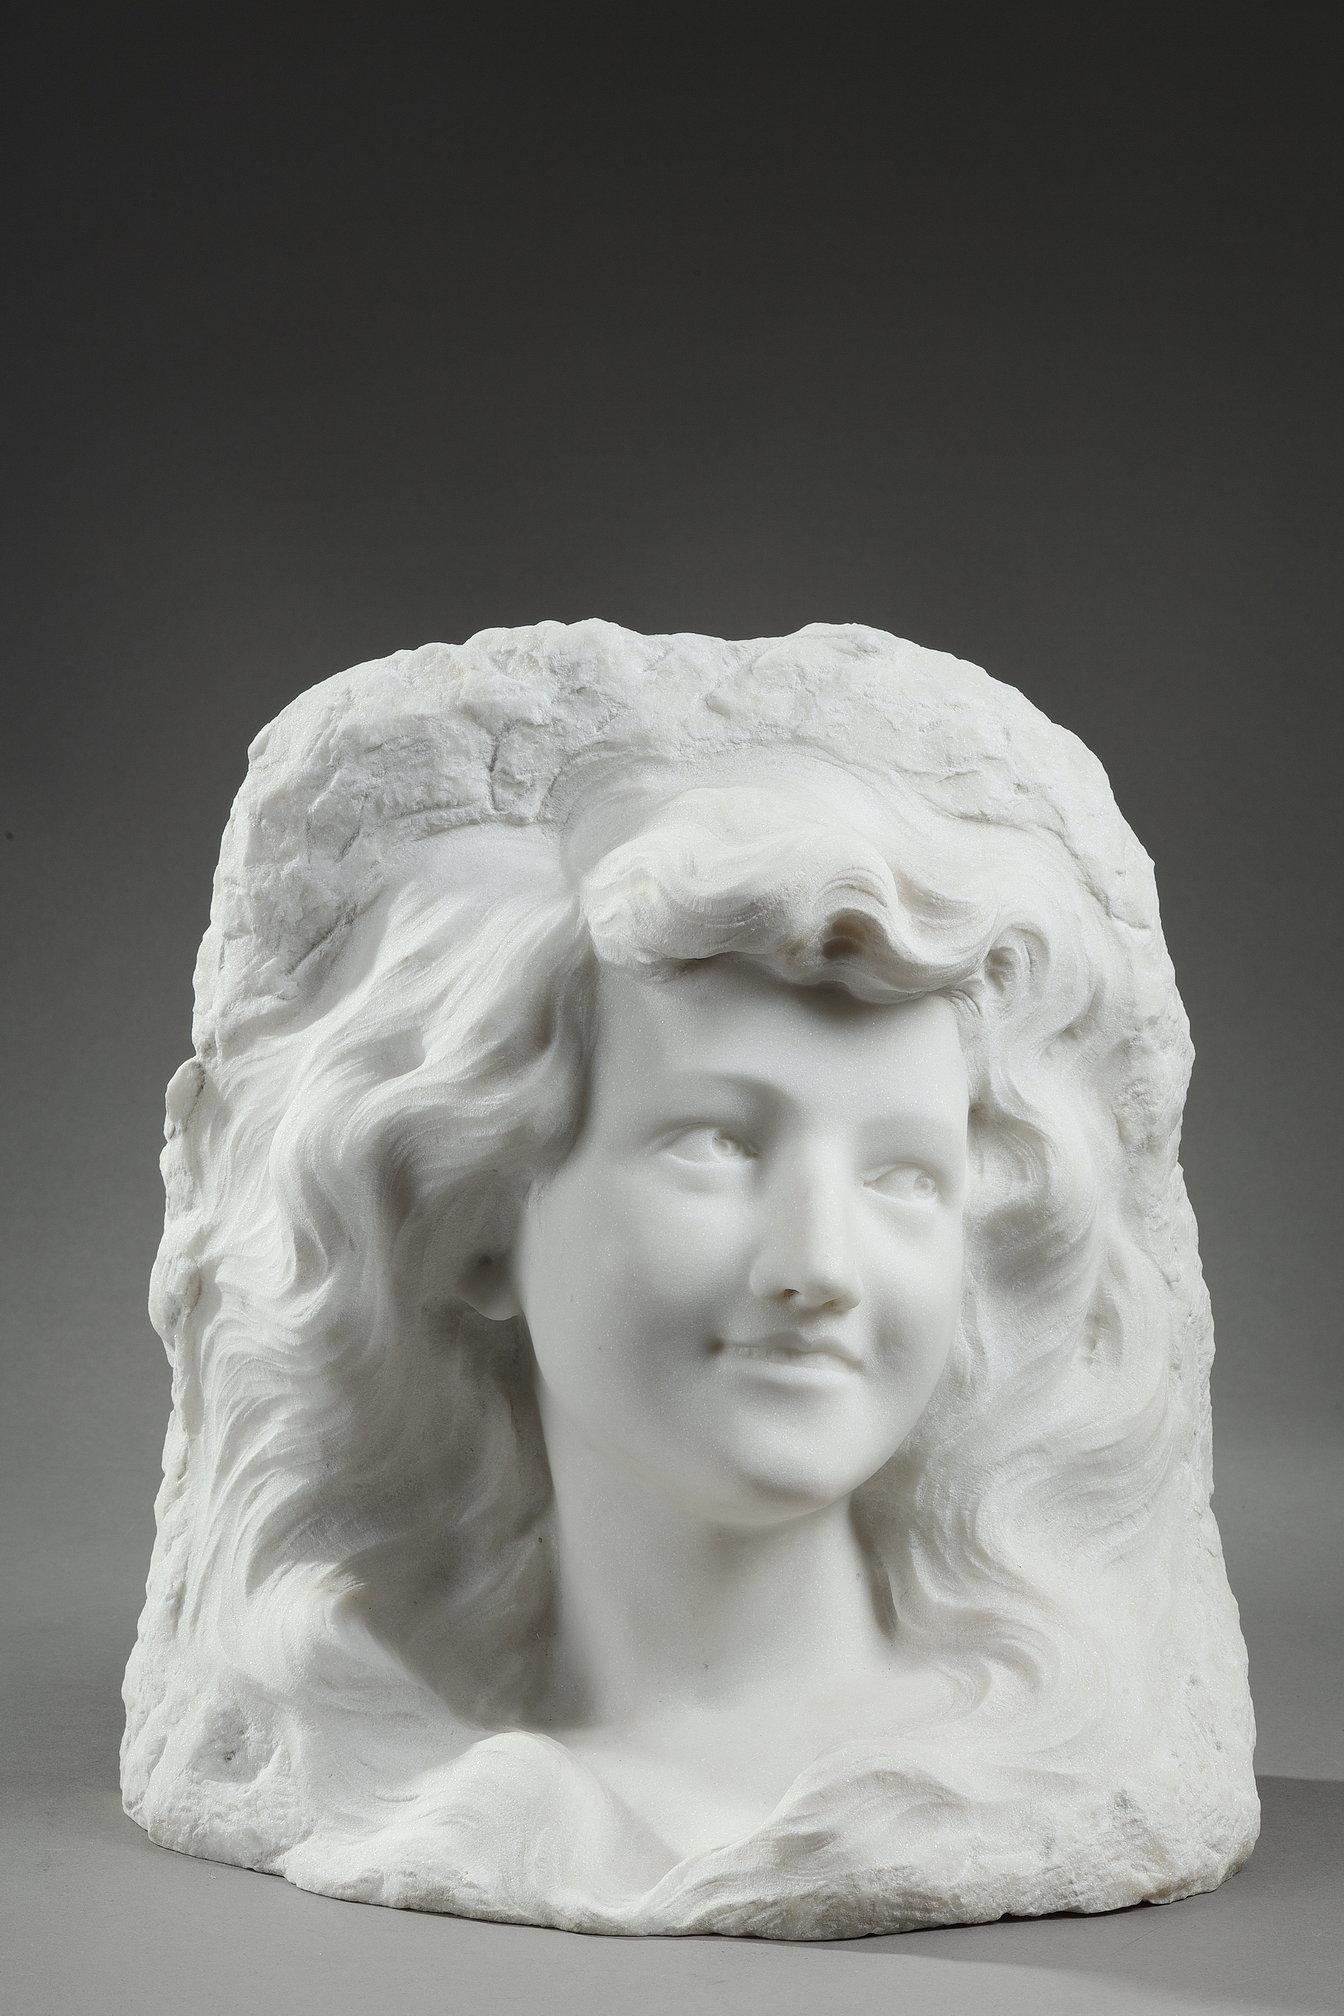 Sculpture directe d'un portrait de jeune femme souriante en marbre blanc de Carrare de la période Art nouveau. Le sculpteur utilise une technique astucieuse pour faire ressortir le visage, permettant à la figure de prendre forme en 